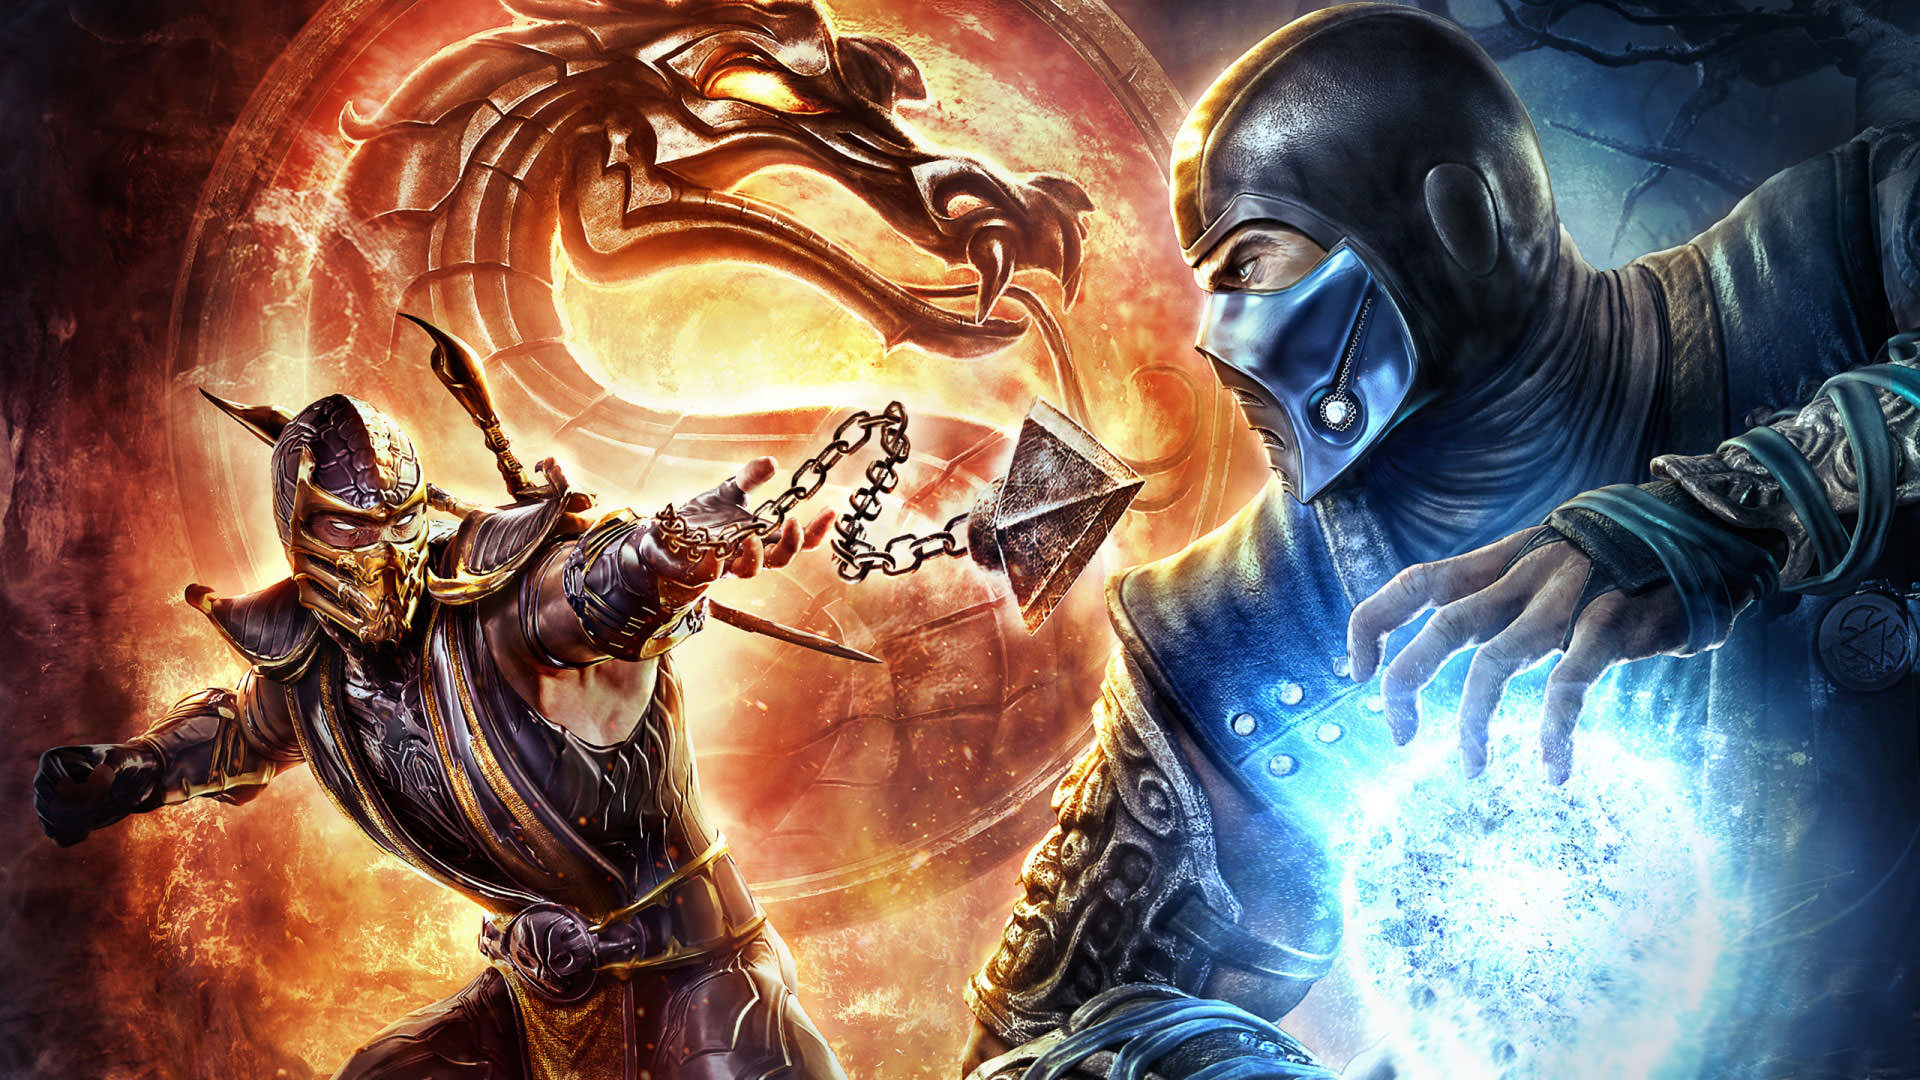 فیلم Mortal Kombat به‌خاطر شیوع کرونا تا مدت نامعلومی با تاخیر مواجه شد